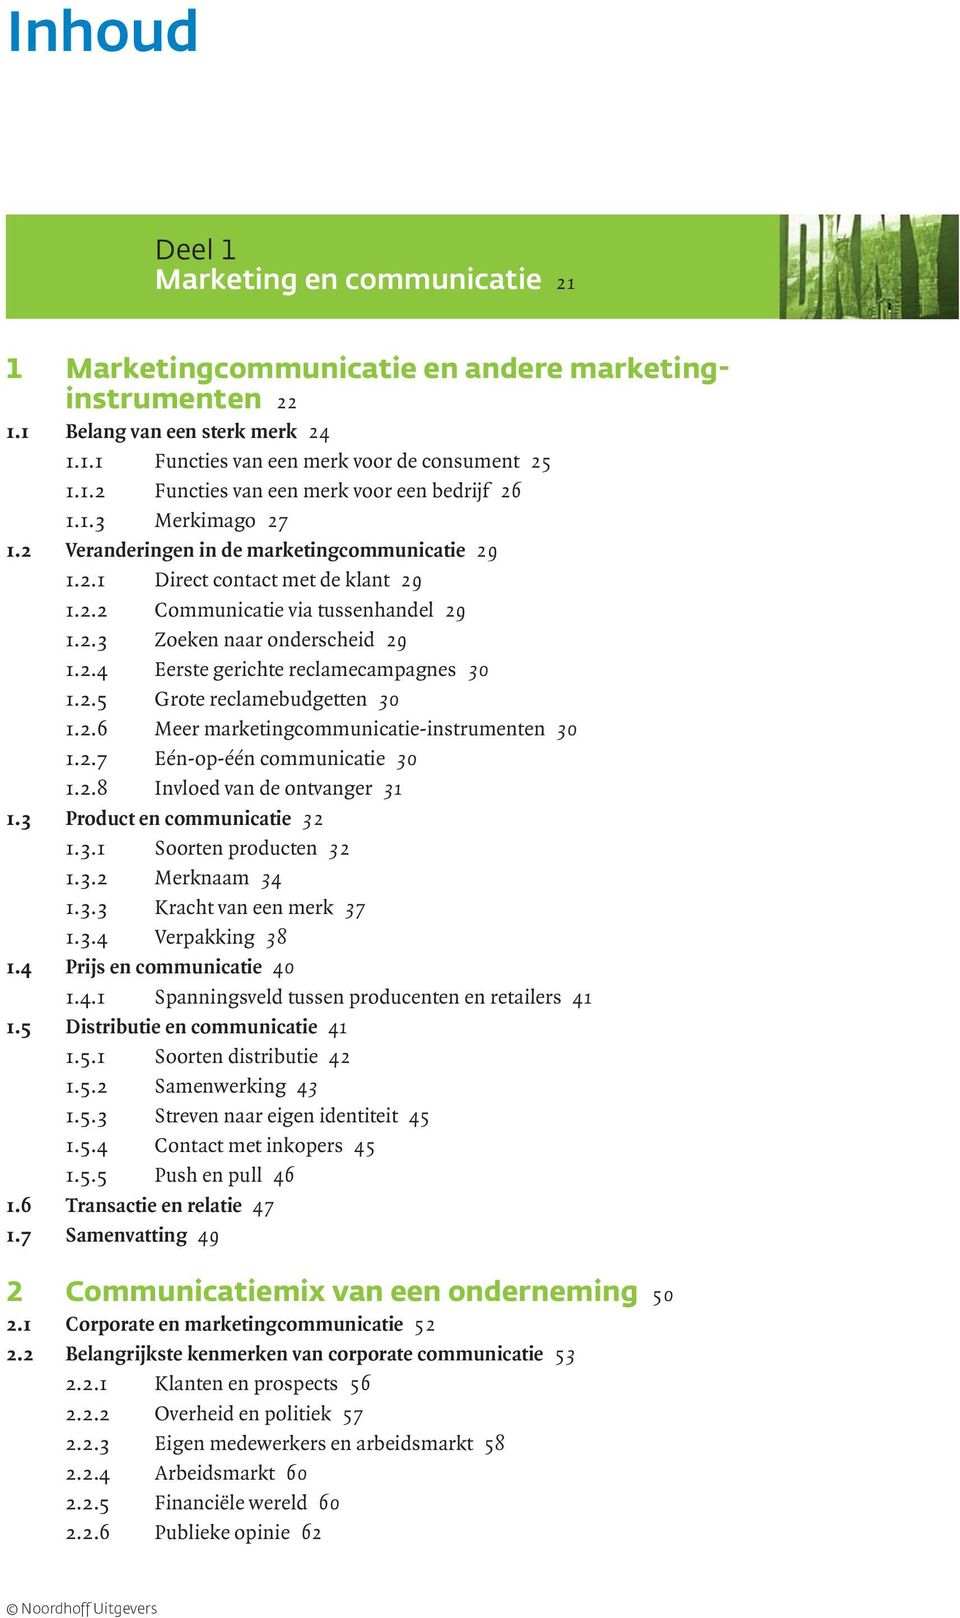 2.5 Grote reclamebudgetten 30 1.2.6 Meer marketingcommunicatie-instrumenten 30 1.2.7 Eén-op-één communicatie 30 1.2.8 Invloed van de ontvanger 31 1.3 Product en communicatie 32 1.3.1 Soorten producten 32 1.